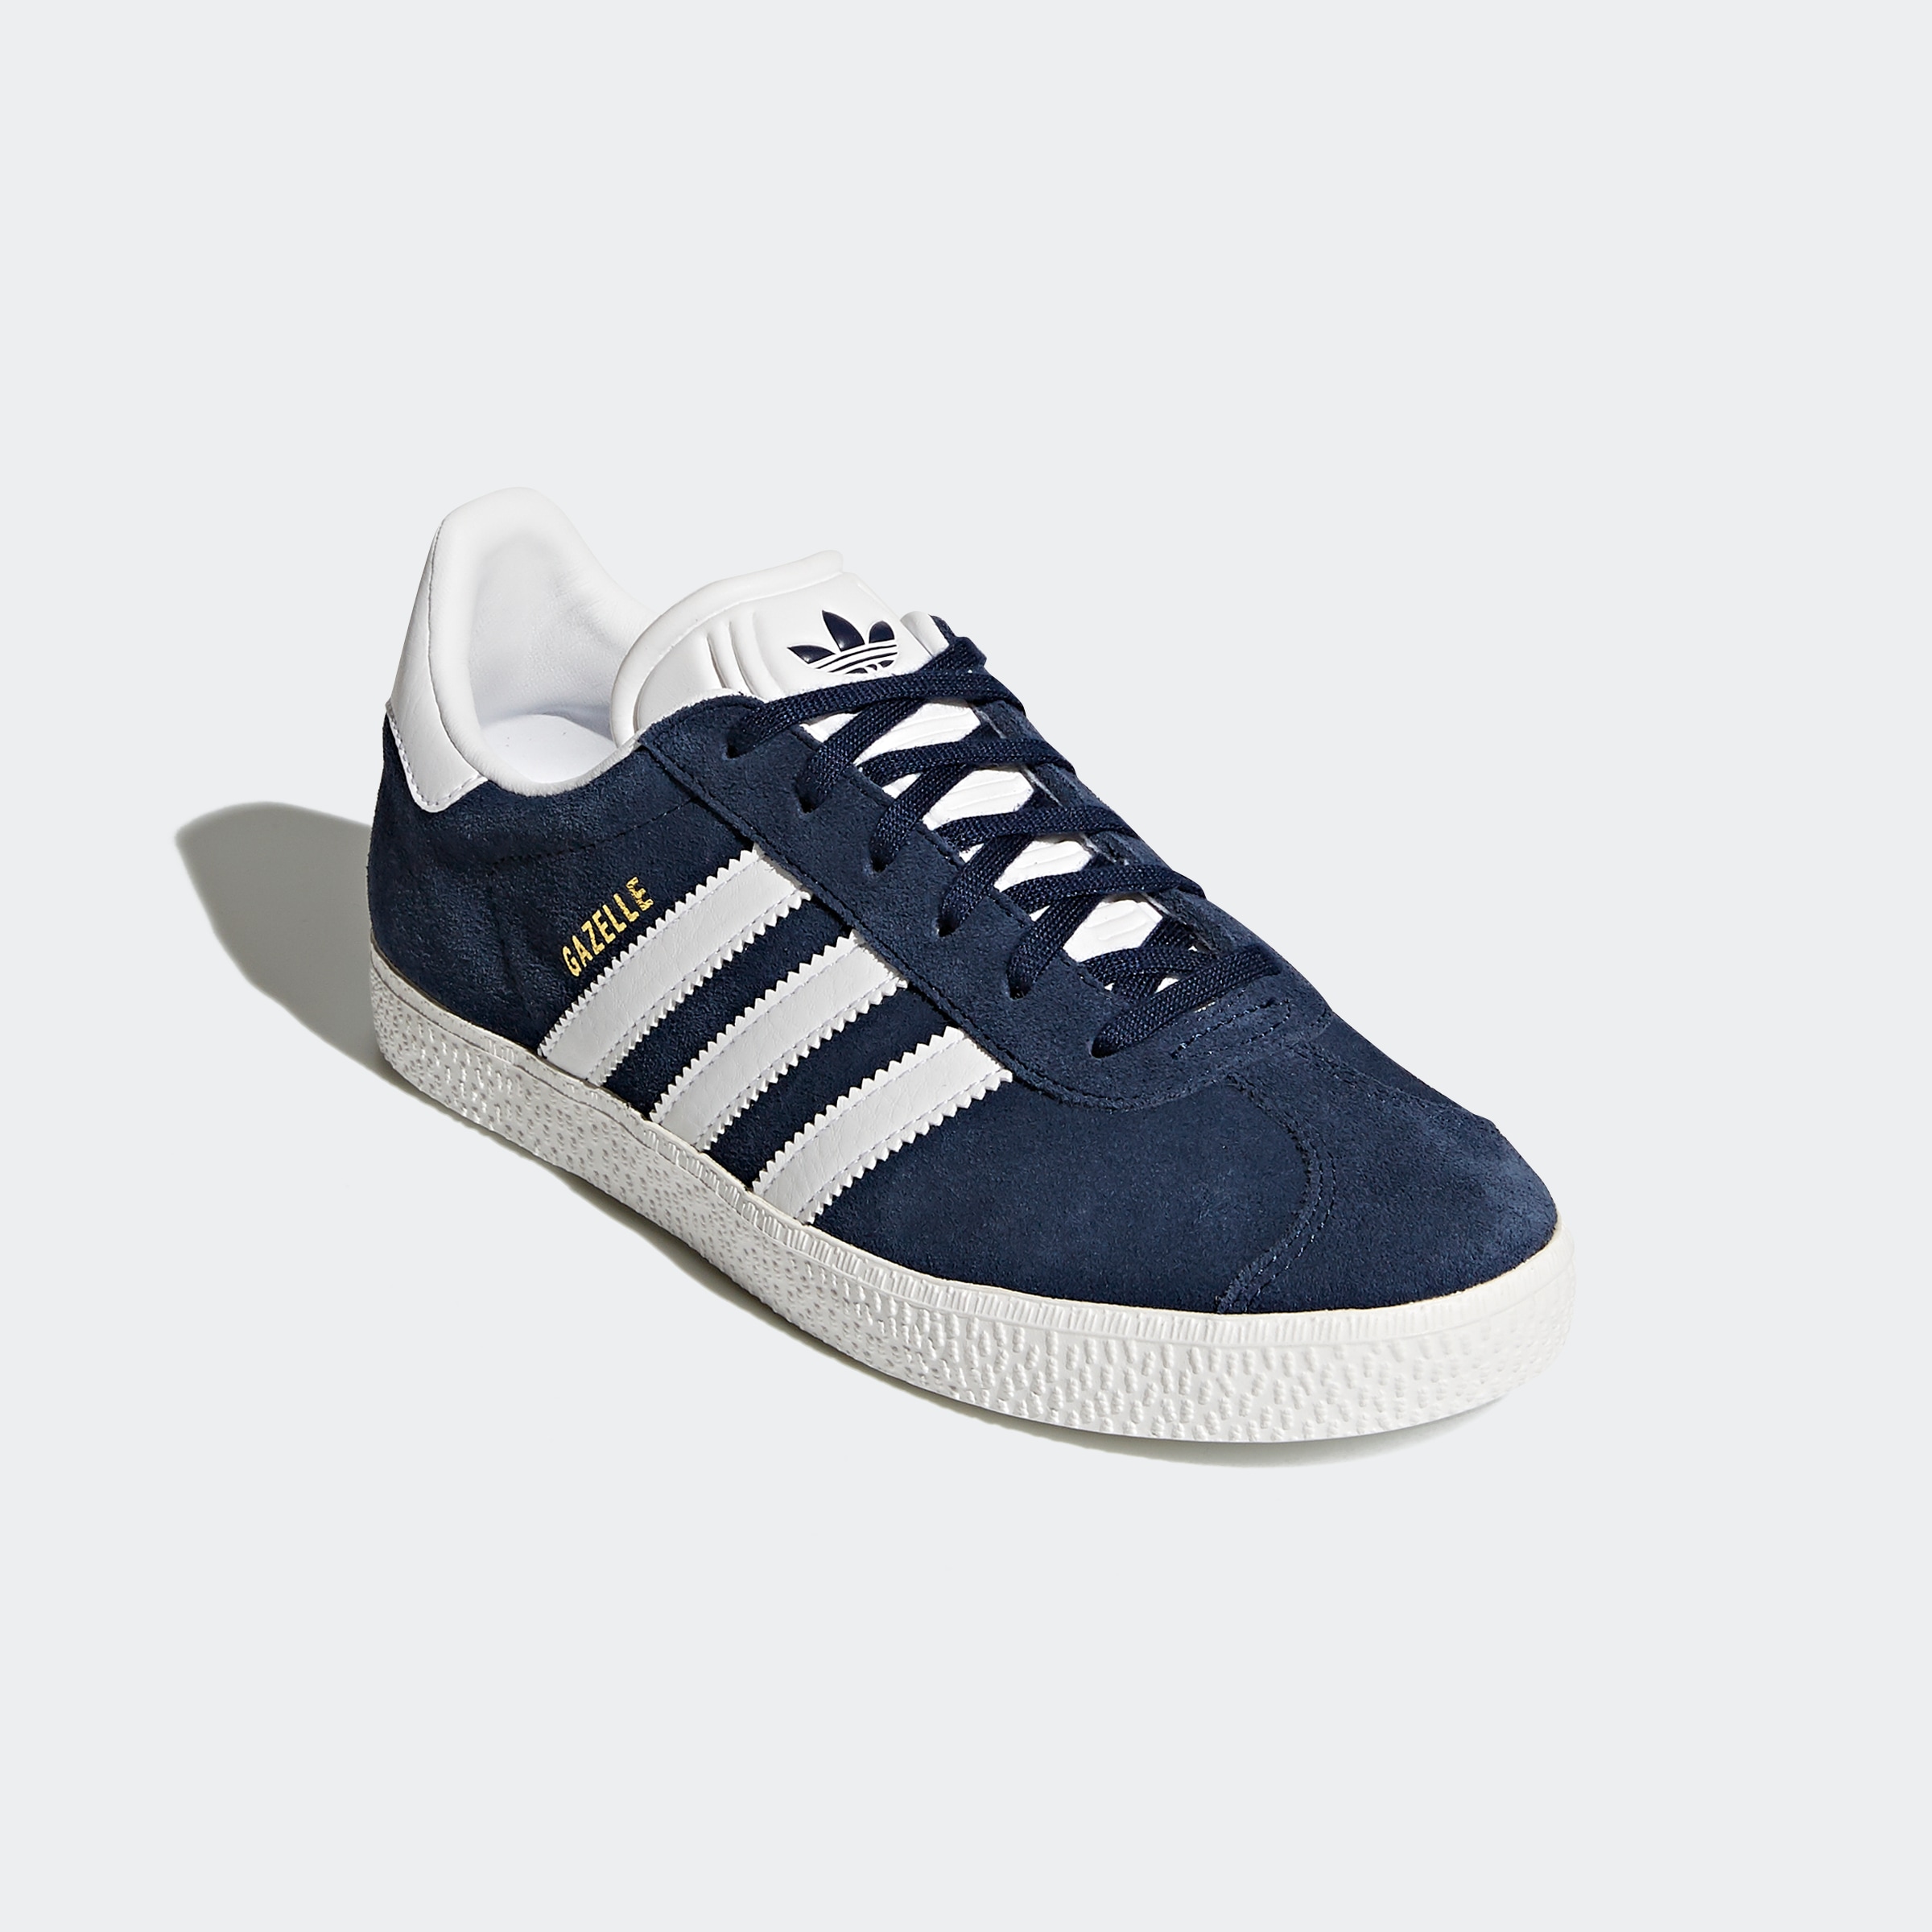 adidas Unisex-Kinder Gazelle Sneaker, Blau (Maruni/Ftwbla 000), 35.5 EU